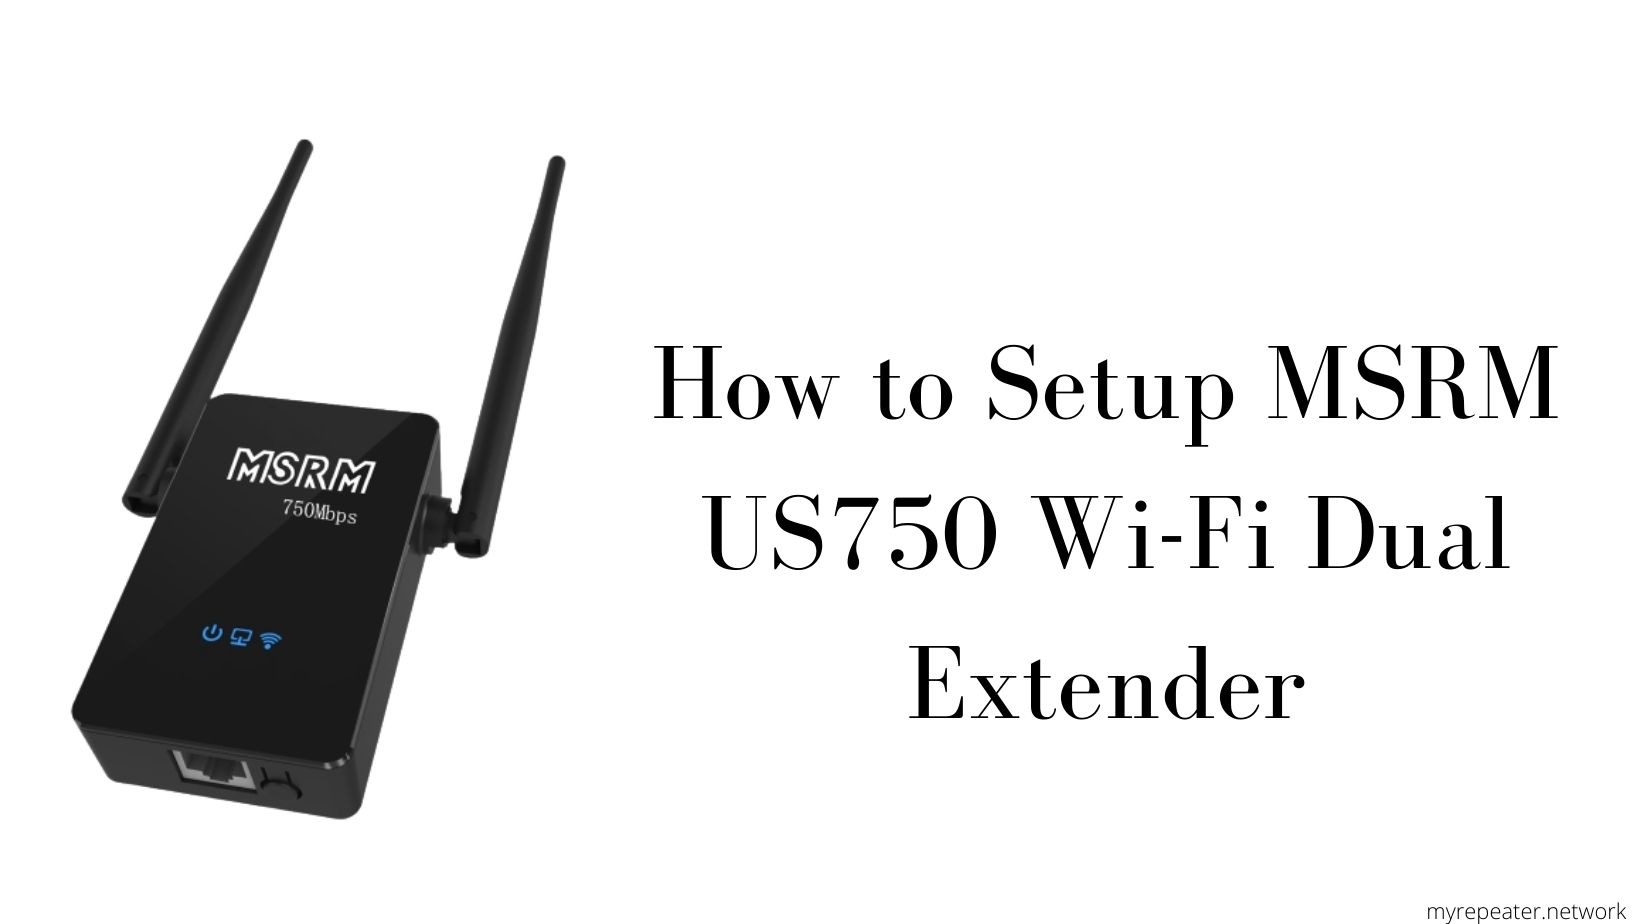 How to Setup MSRM US750 Extender